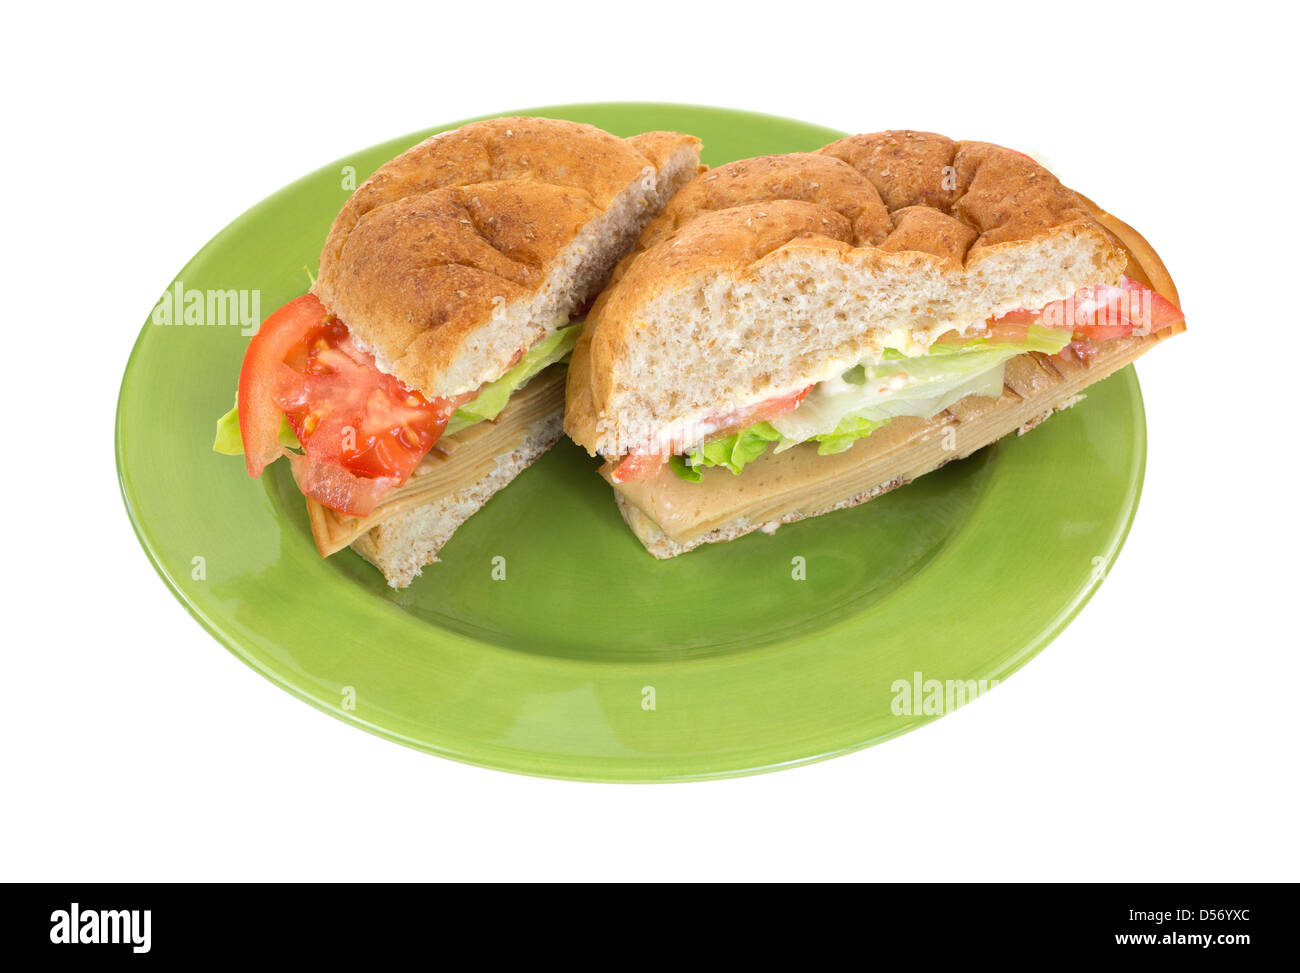 Un grano ingombranti rotolo senza carne tofu Sandwich di tacchino con lattuga pomodori e maionese tagliate a metà su una piastra verde. Foto Stock